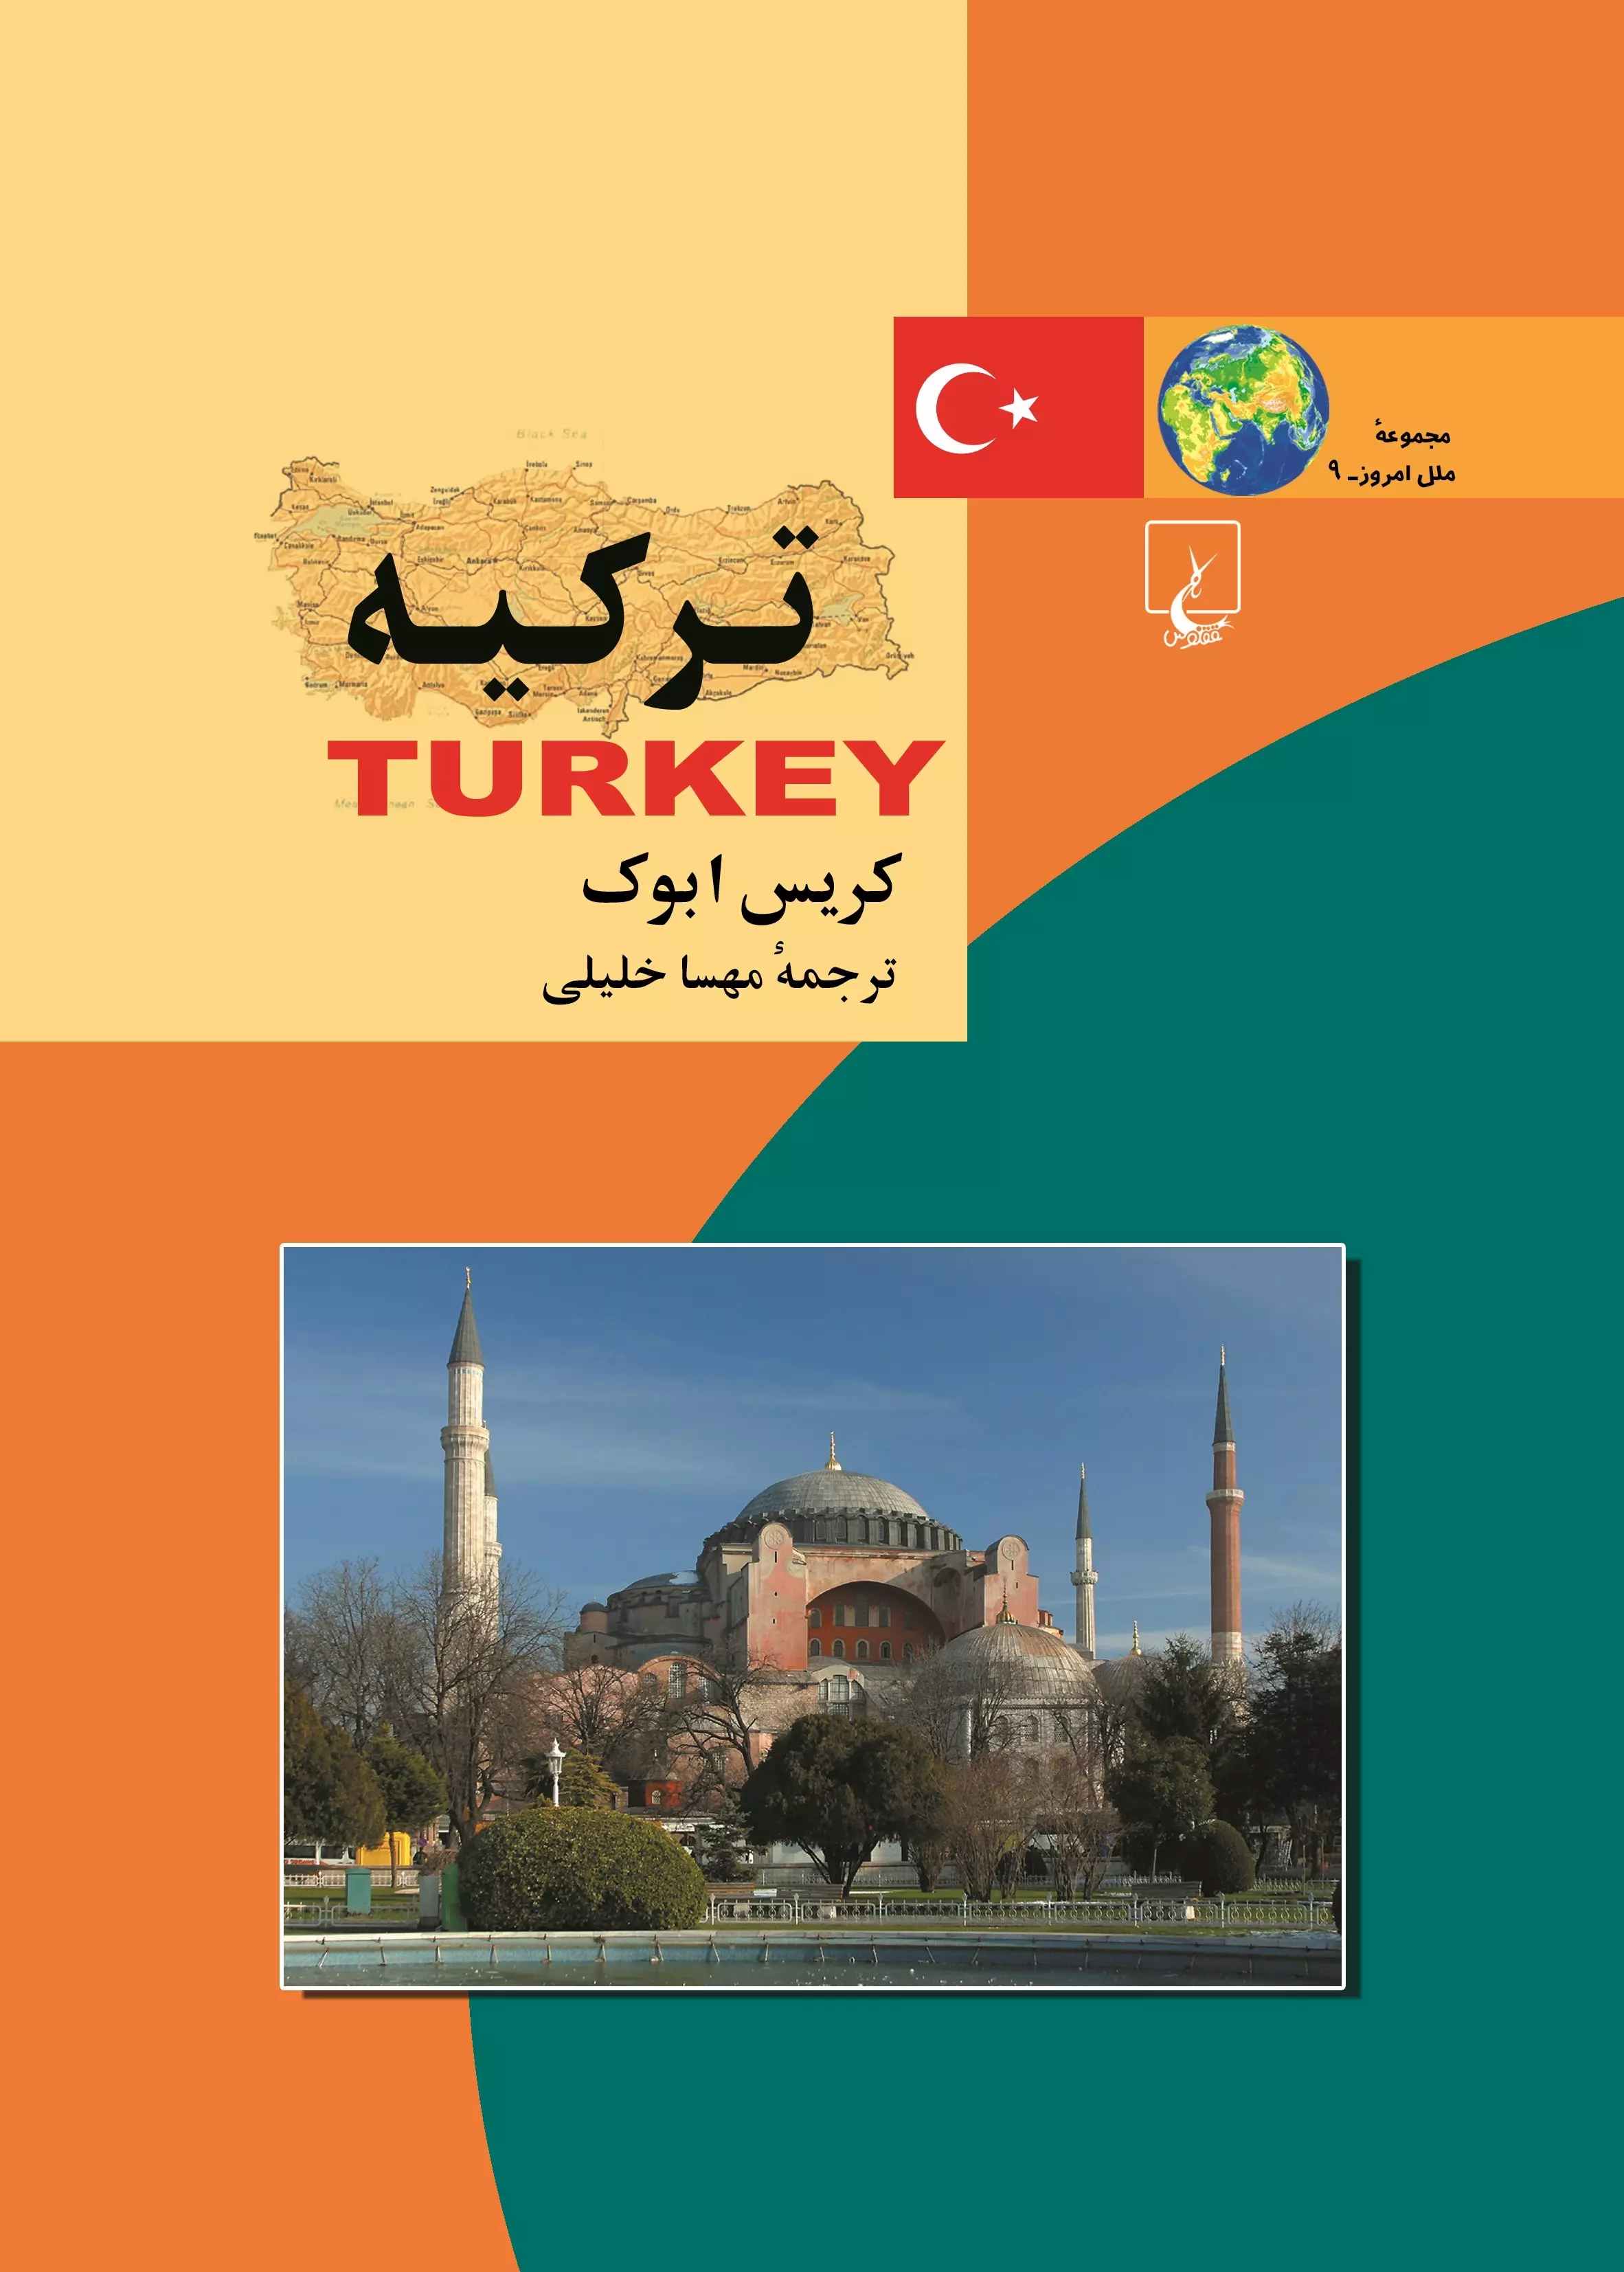  کتاب ترکیه